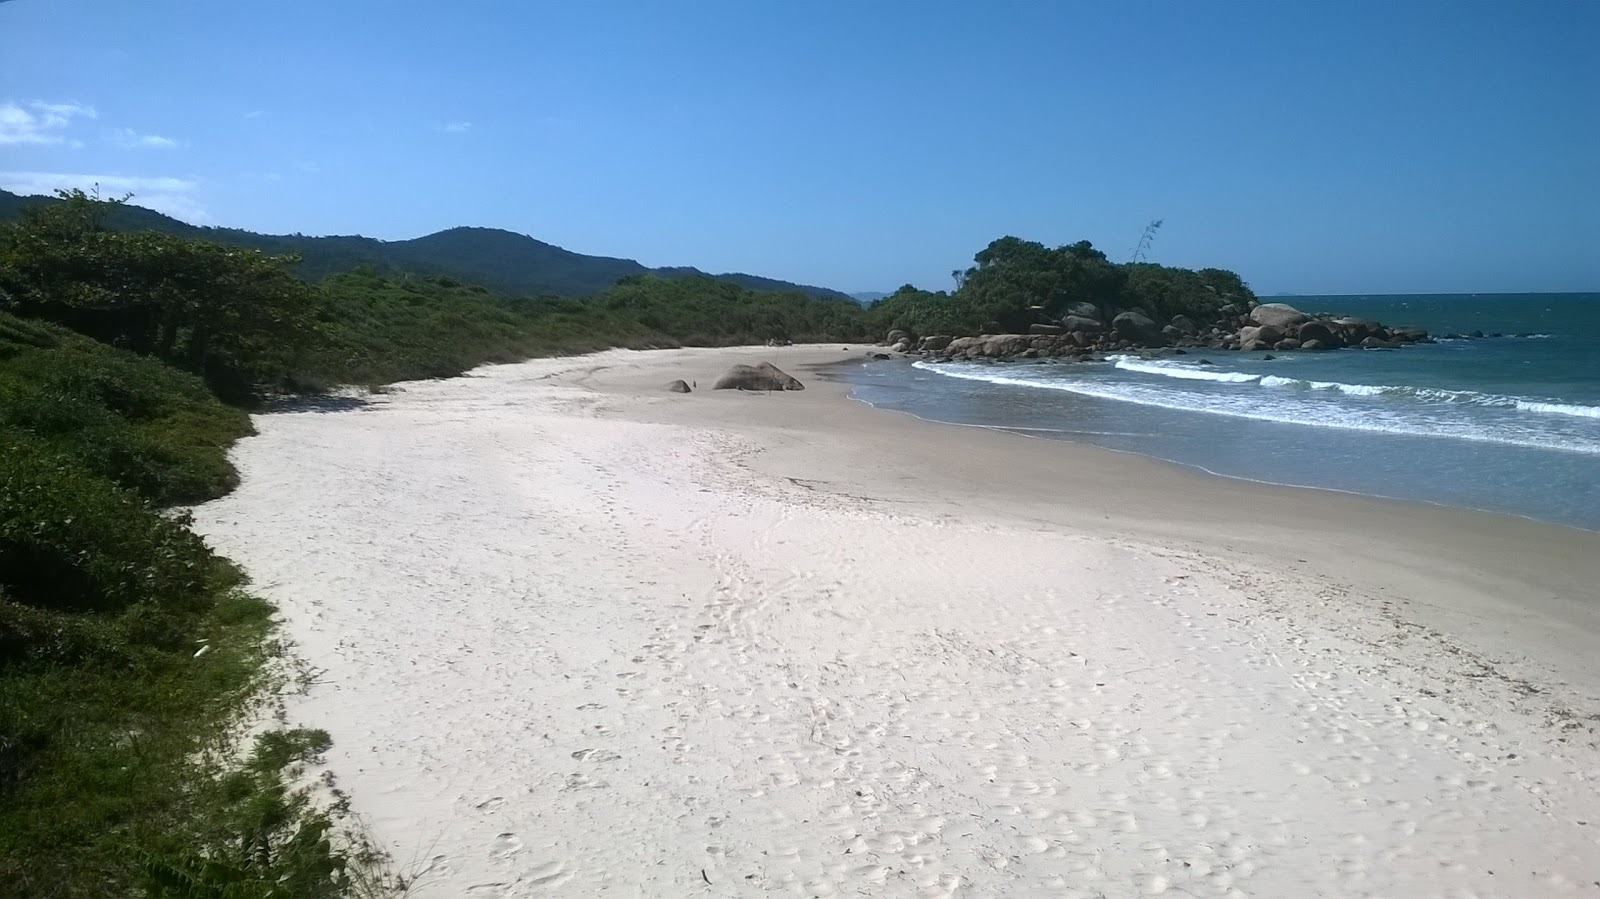 Fotografie cu Praia das Cordas sprijinit de stânci